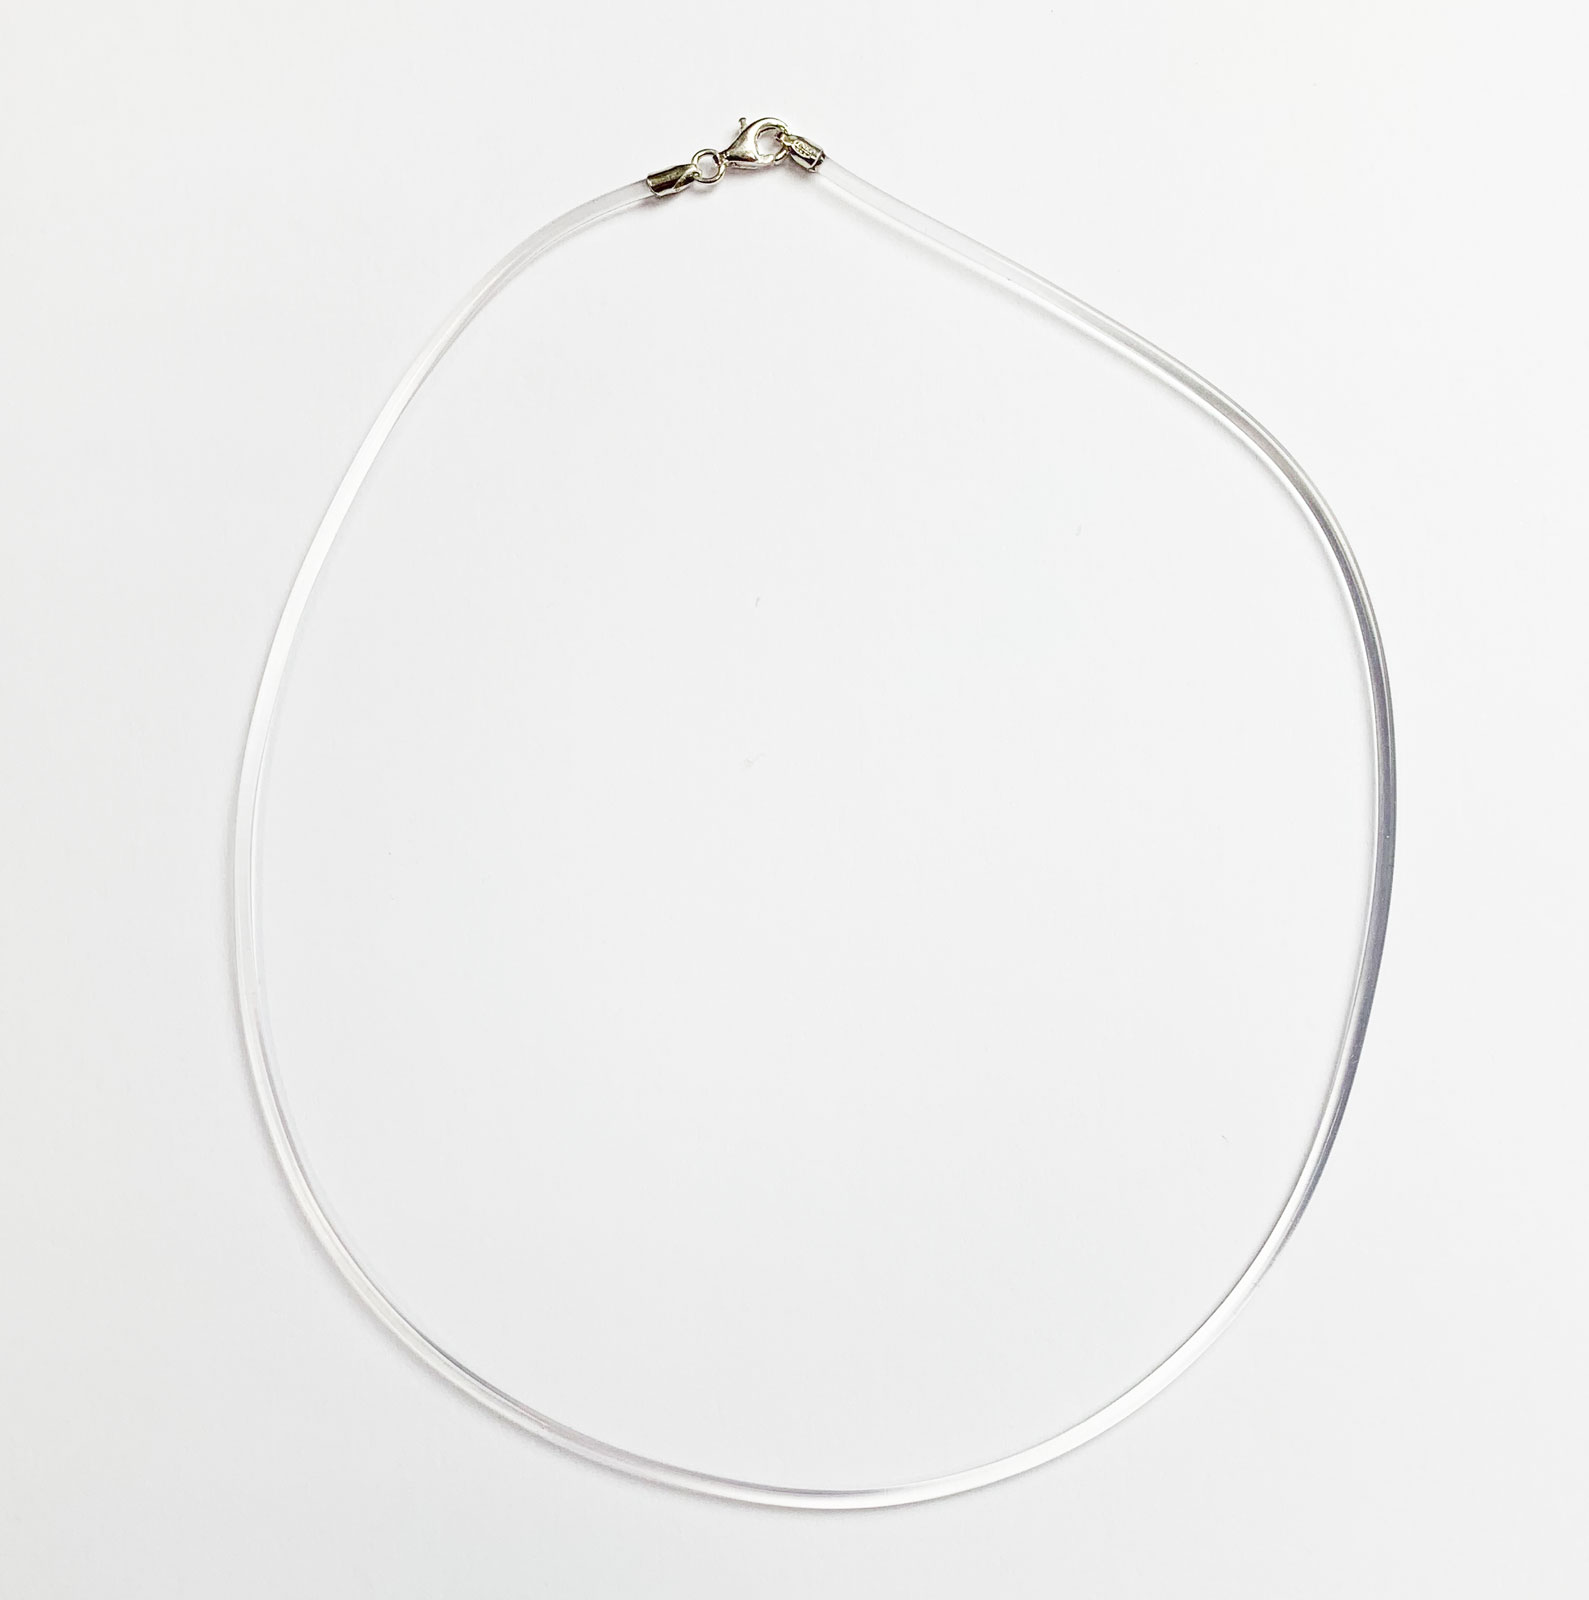 Hals-Kette Kautschukband transparent 50 cm, Verschluss 925er Silber